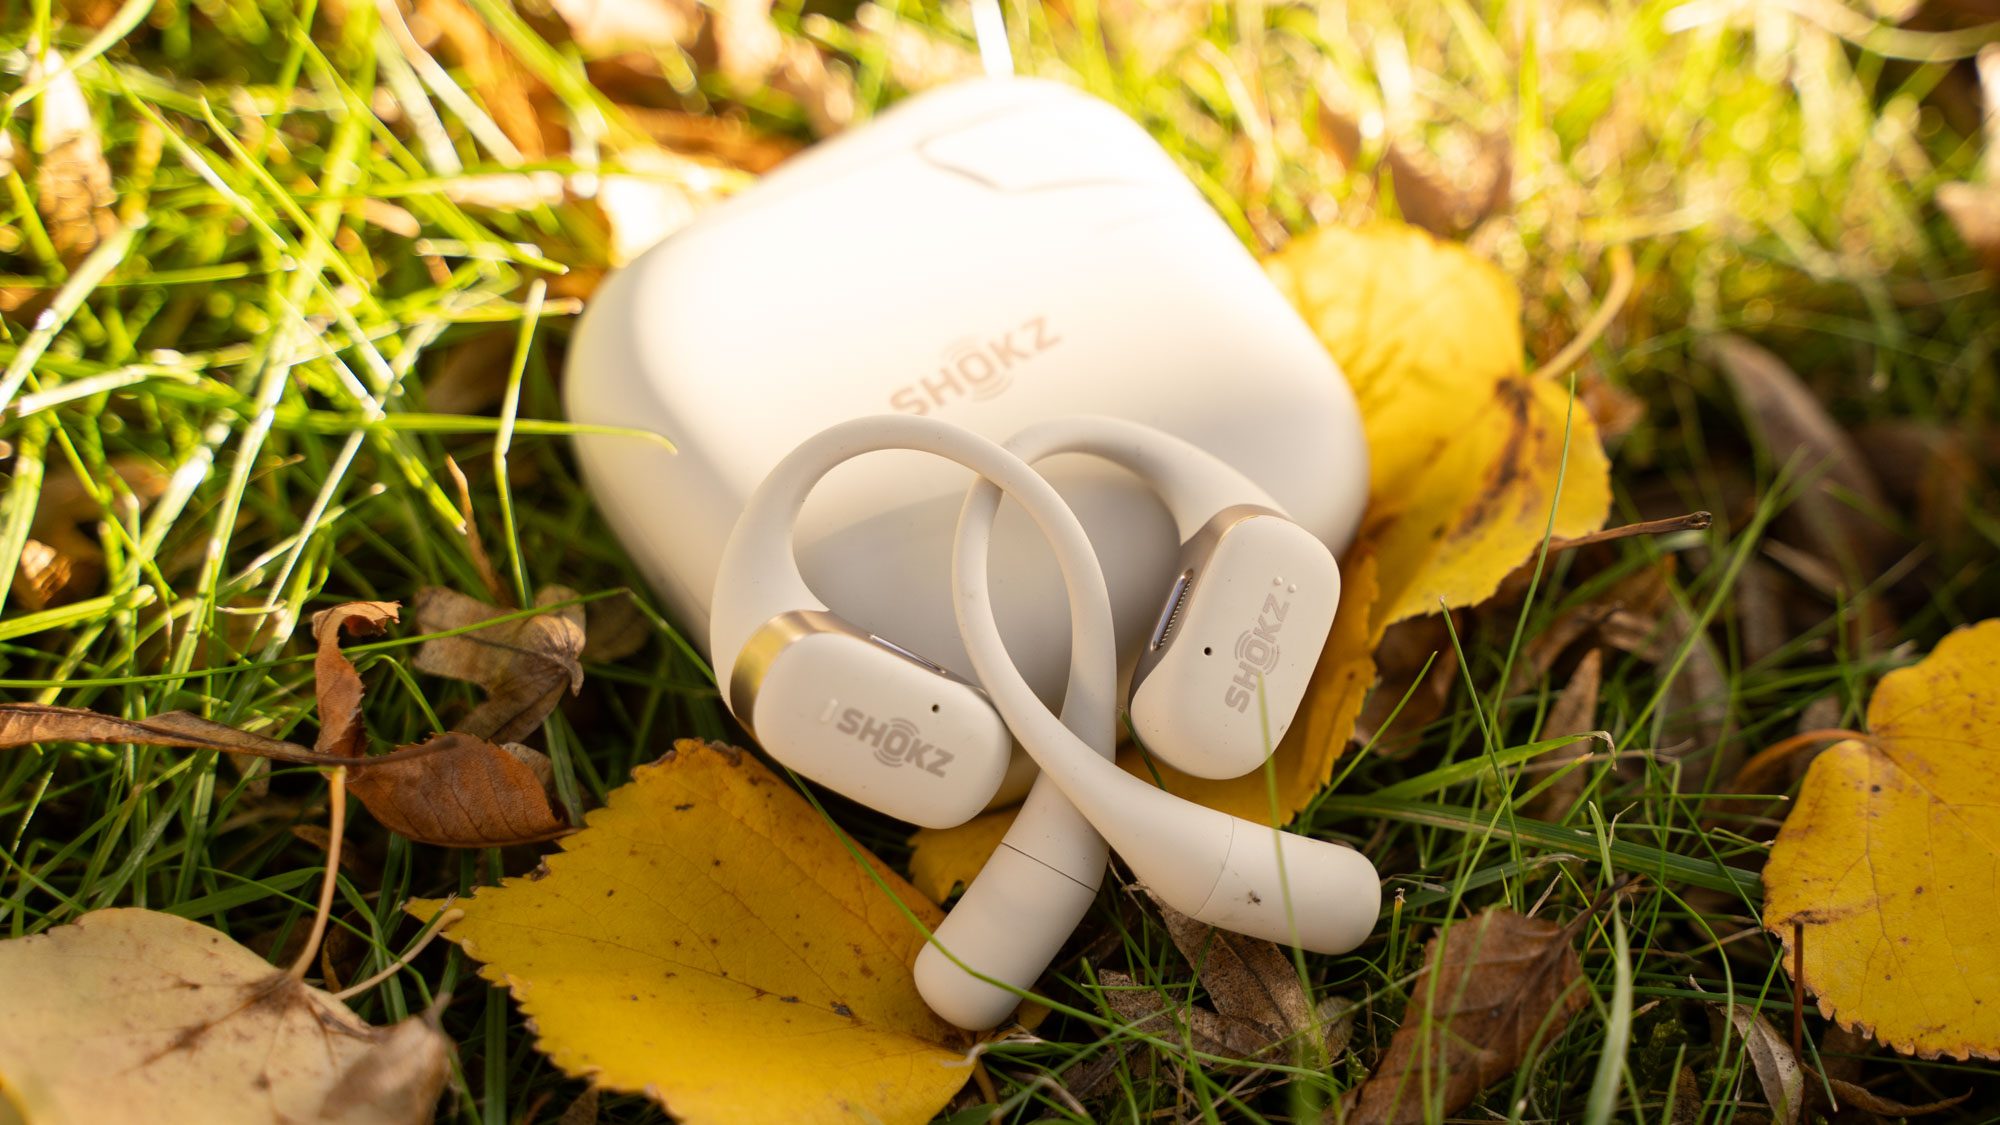 Shokz OpenFit Kopfhörer mit Ladehülle auf Wiese mit Herbstlaub liegend.